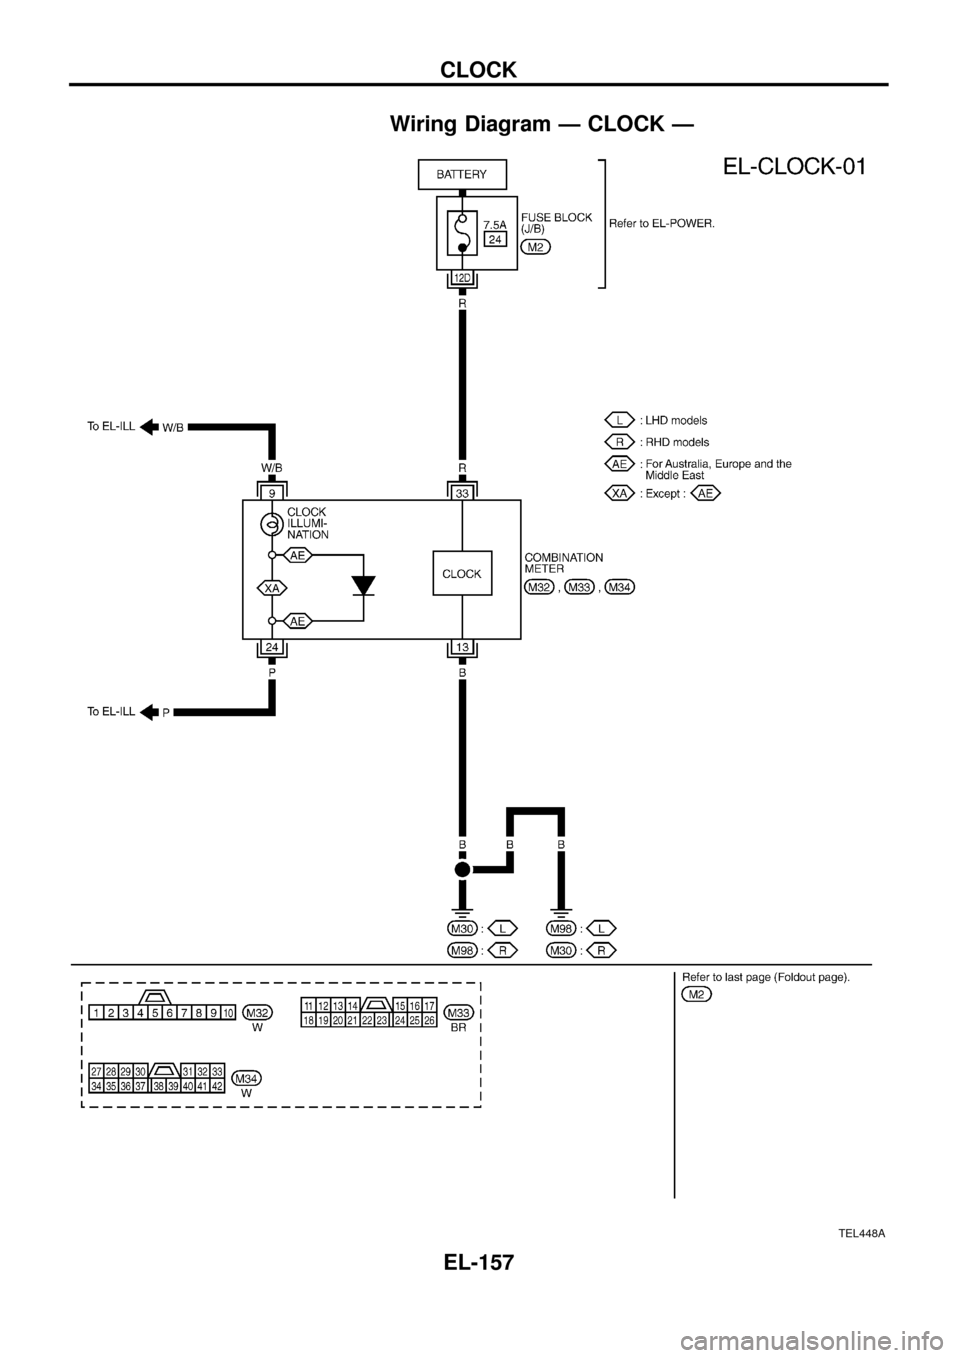 NISSAN PATROL 1998 Y61 / 5.G Electrical System Workshop Manual Wiring Diagram Ð CLOCK Ð
TEL448A
CLOCK
EL-157 